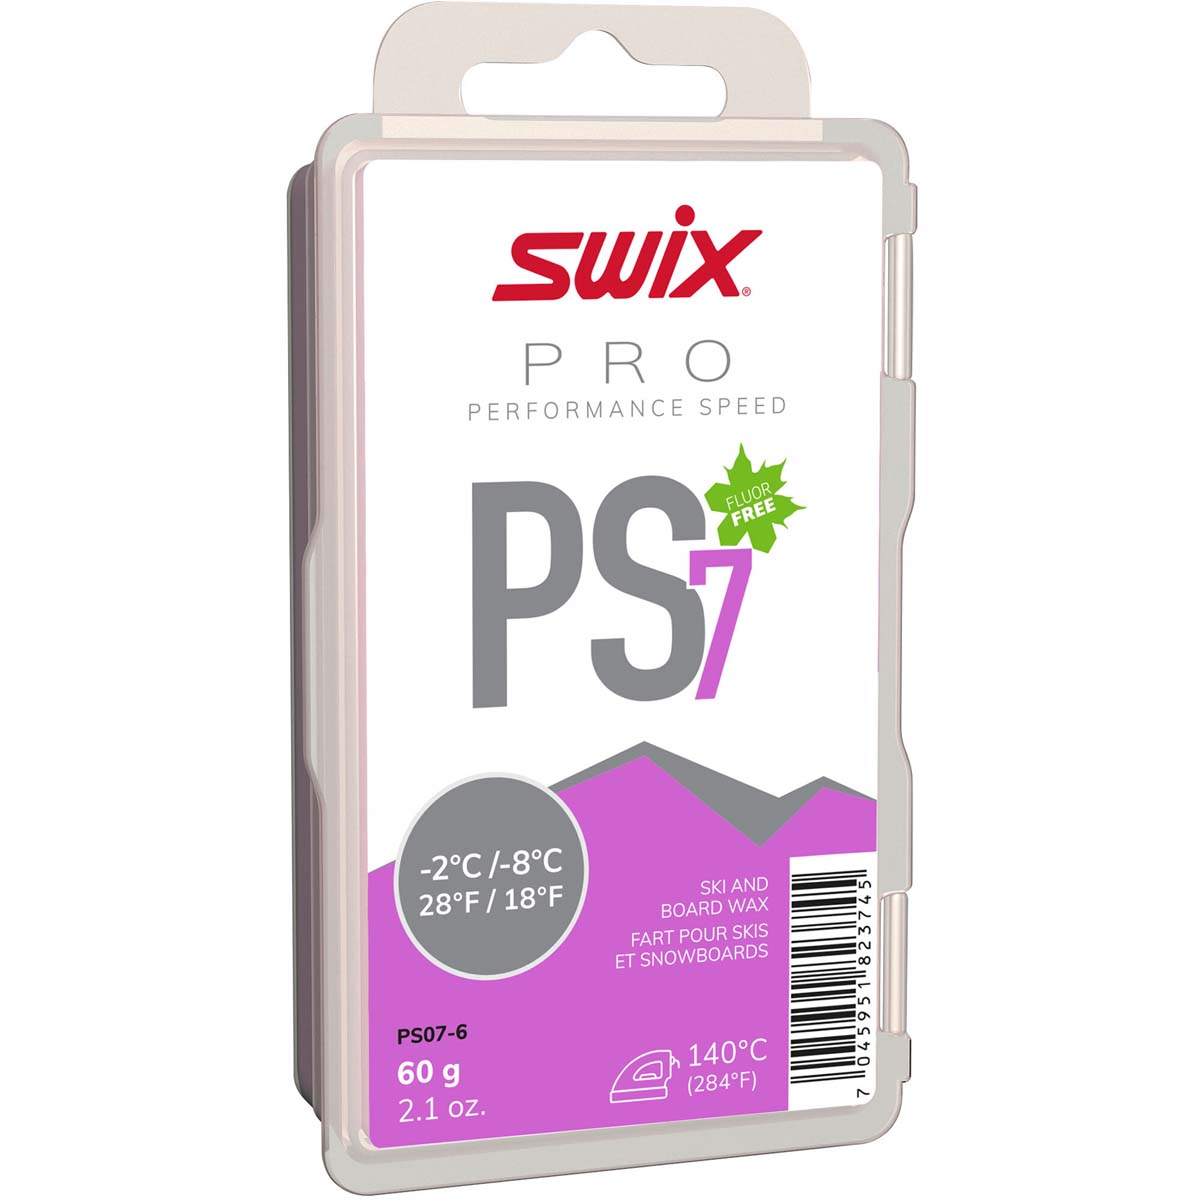 Skluzný vosk Swix Performance Speed, PS7 fialový, -2°C/-8°C, 60g